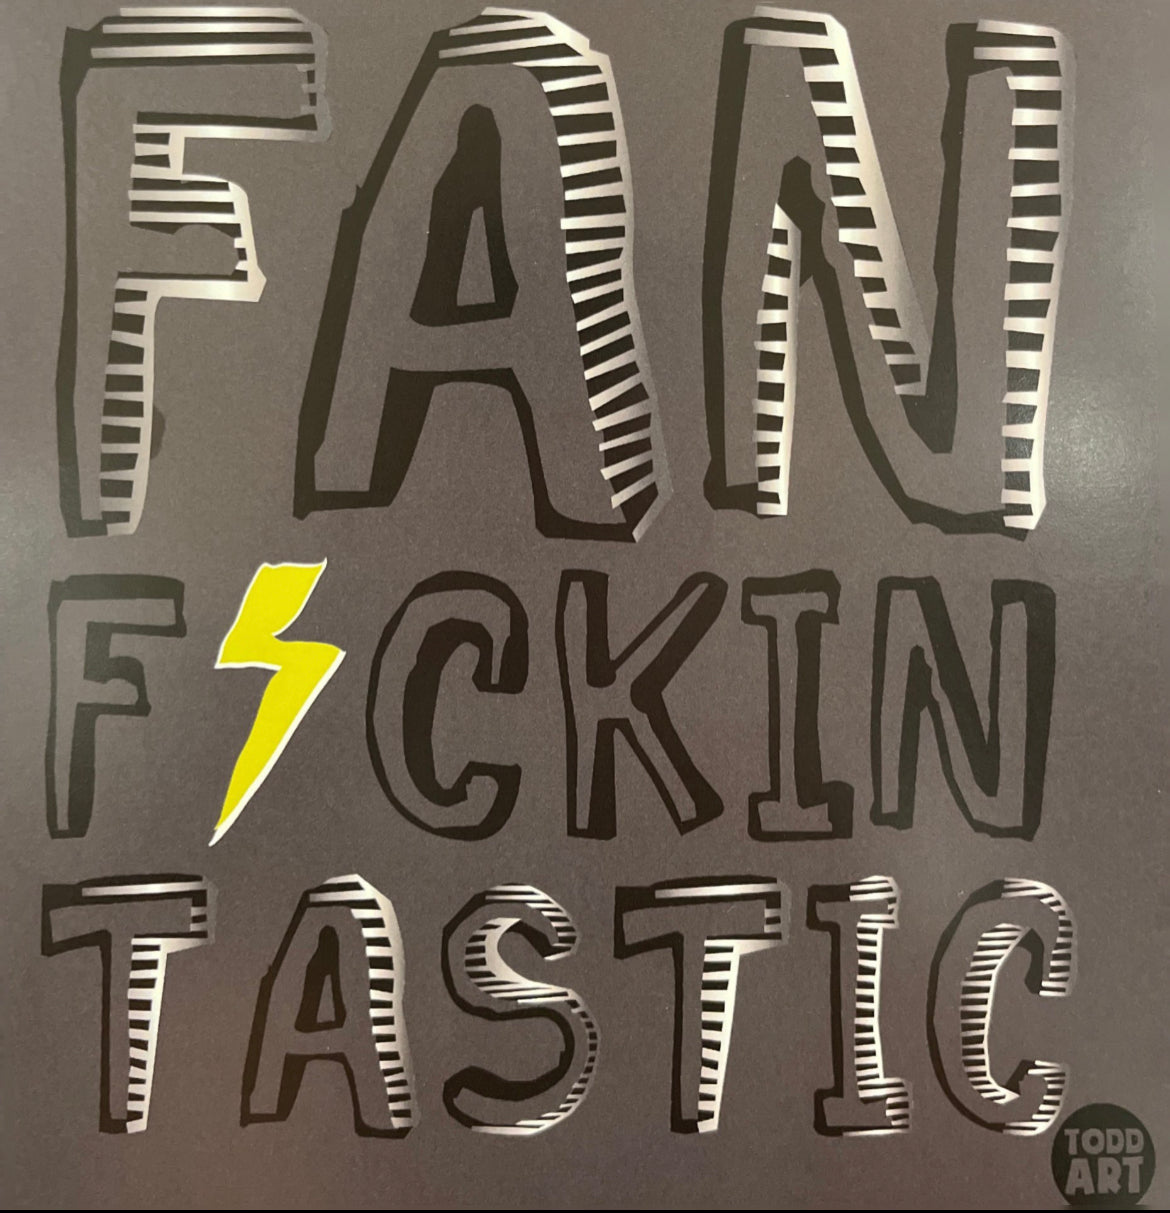 Fan F*ckin Tastic